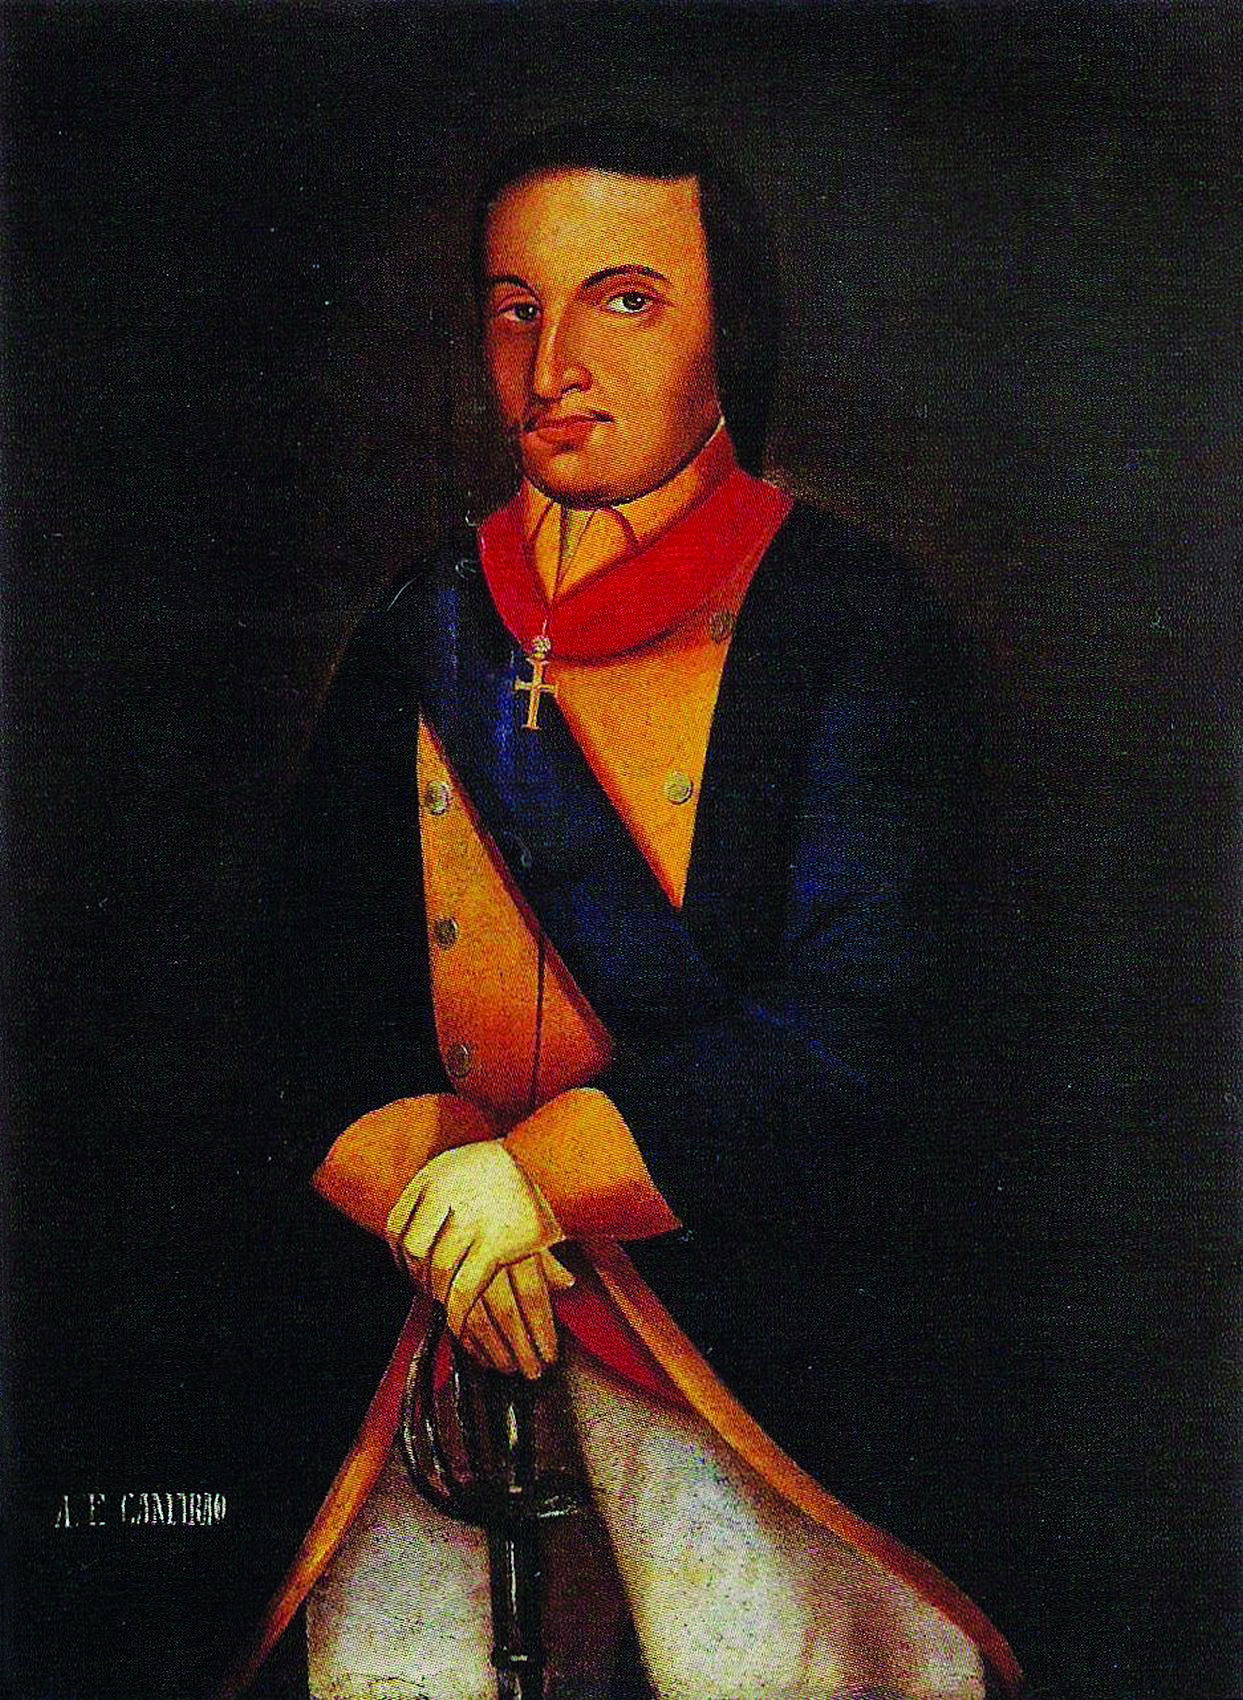 Pintura. Um homem em pé, de cabelos castanhos, longos e lisos, vestindo um casaco azul escuro, calça branca, um crucifixo sobre seu peito, e apoiando suas mãos sobre a base de uma espada.